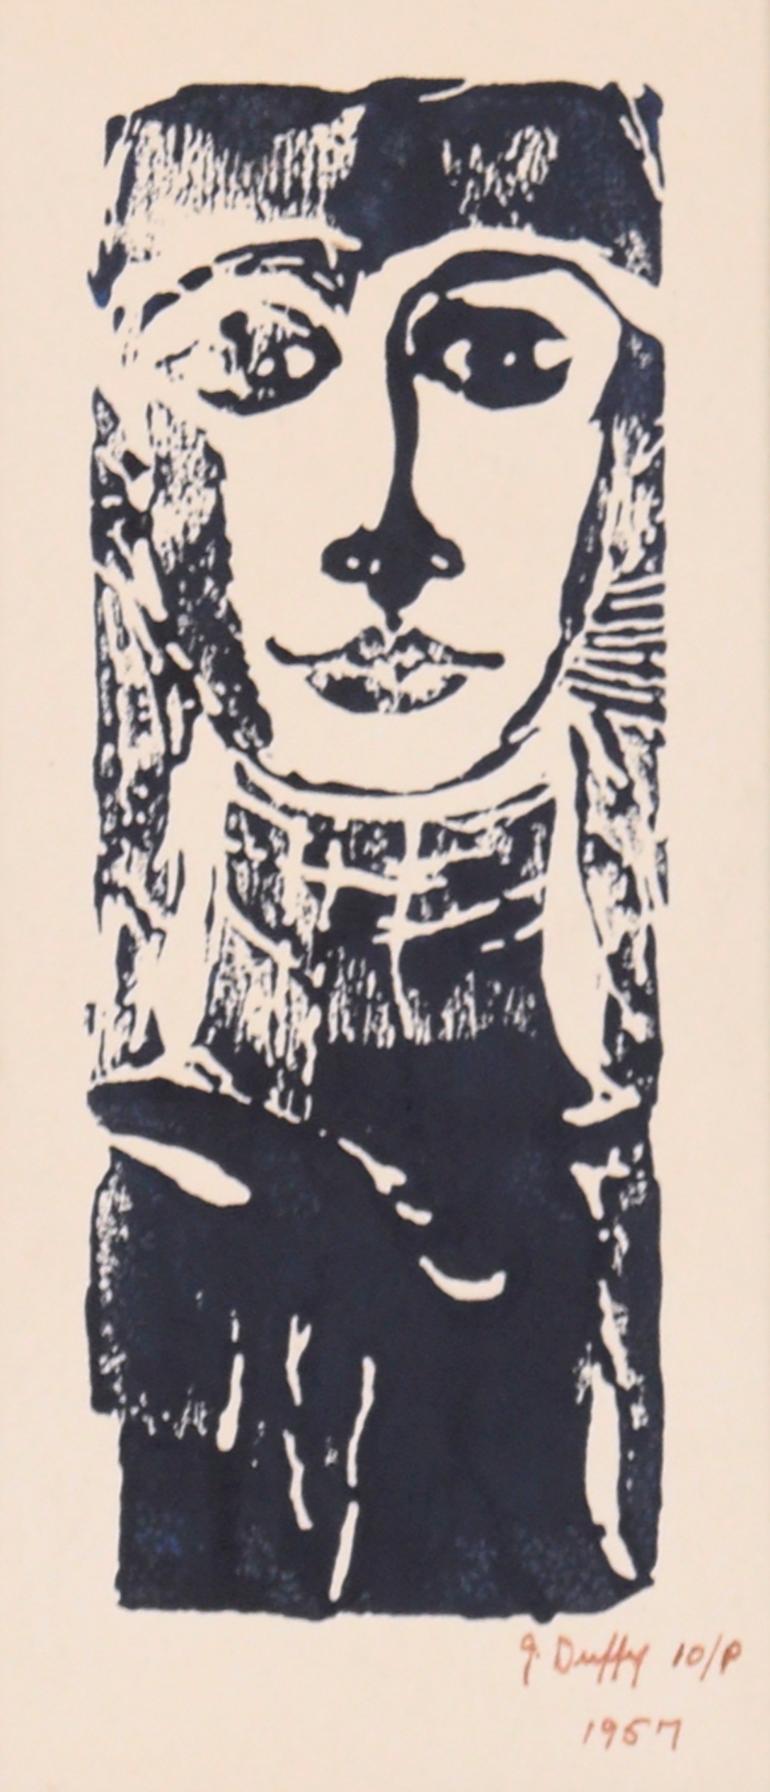 Portrait de femme sur bois - Print de J. Duffy